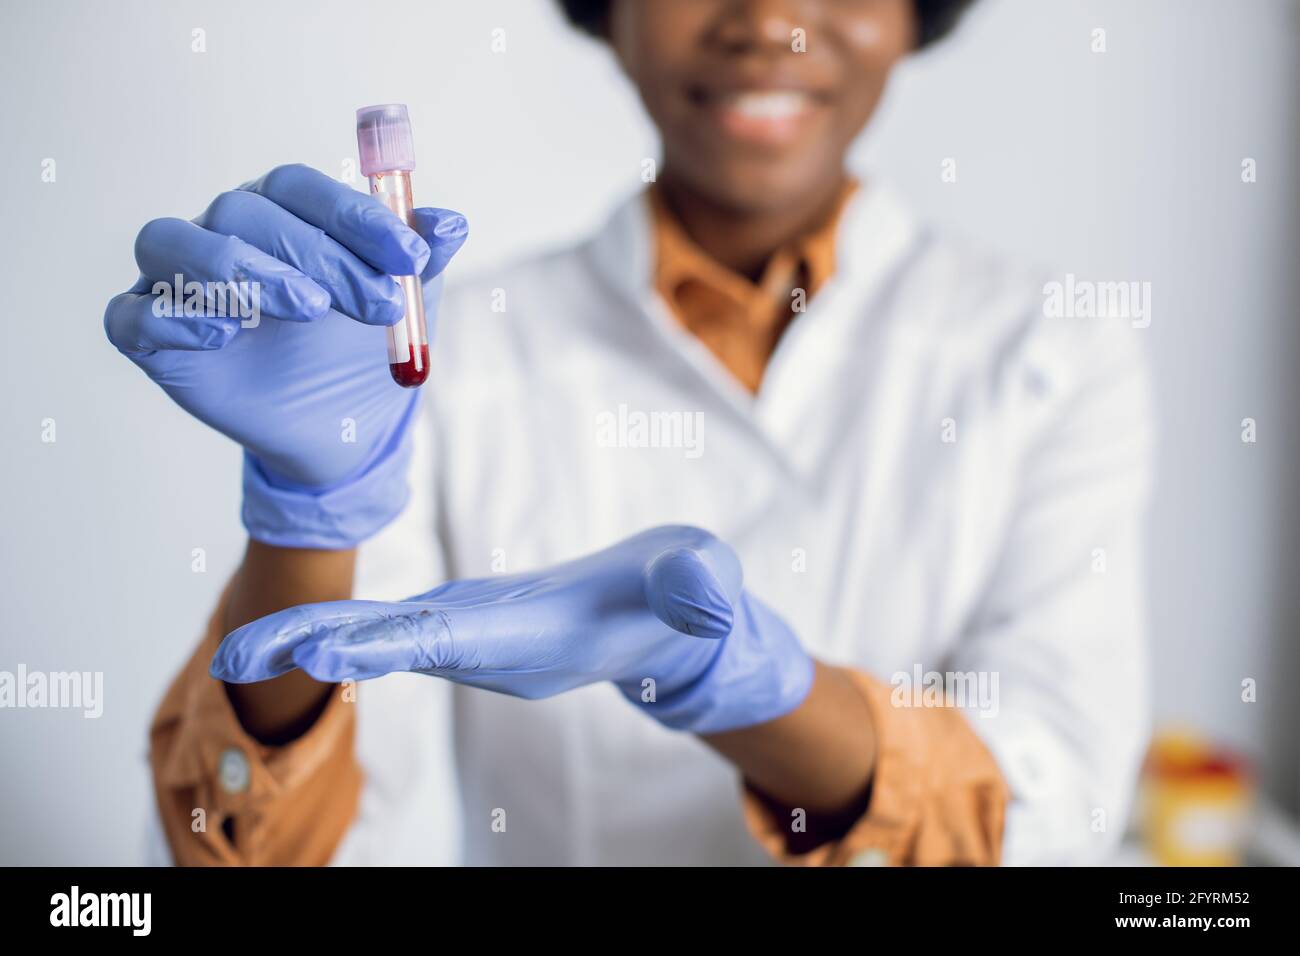 Provetta per analisi del sangue nelle mani di una donna. Primo piano visione offuscata di una simpatica assistente di laboratorio o scienziata afro-americana in guanti blu, contenente una provetta con il campione di sangue. Covid-19 pandemia Foto Stock